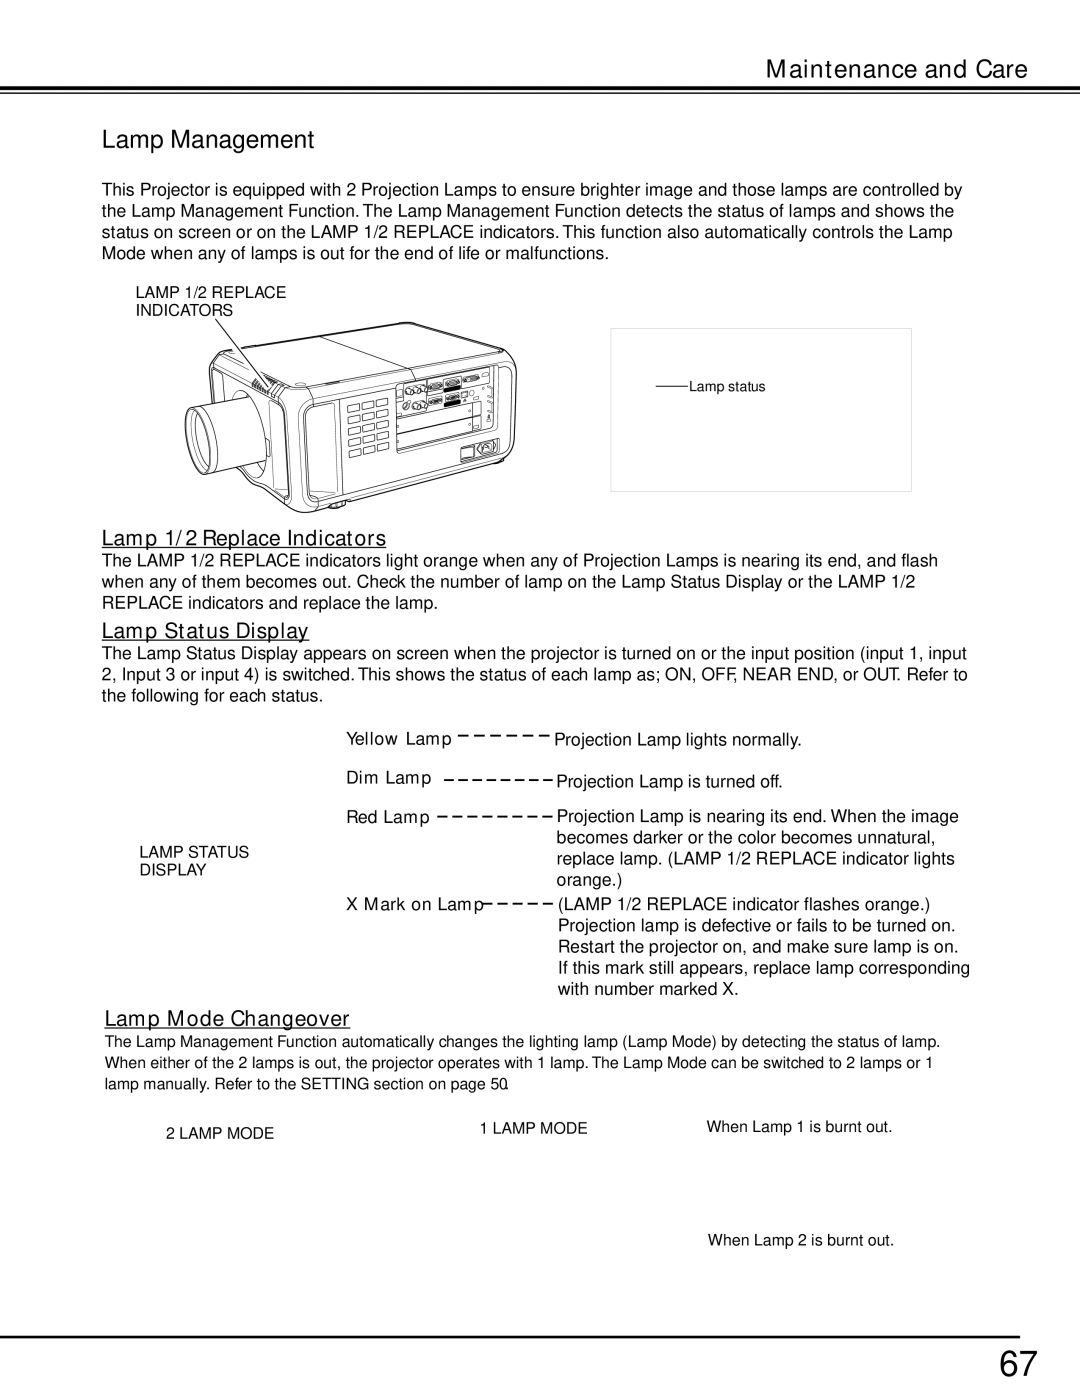 Sanyo PDG-DHT8000L owner manual Lamp Management, Lamp 1/2 Replace Indicators, Lamp Status Display, Lamp Mode Changeover 